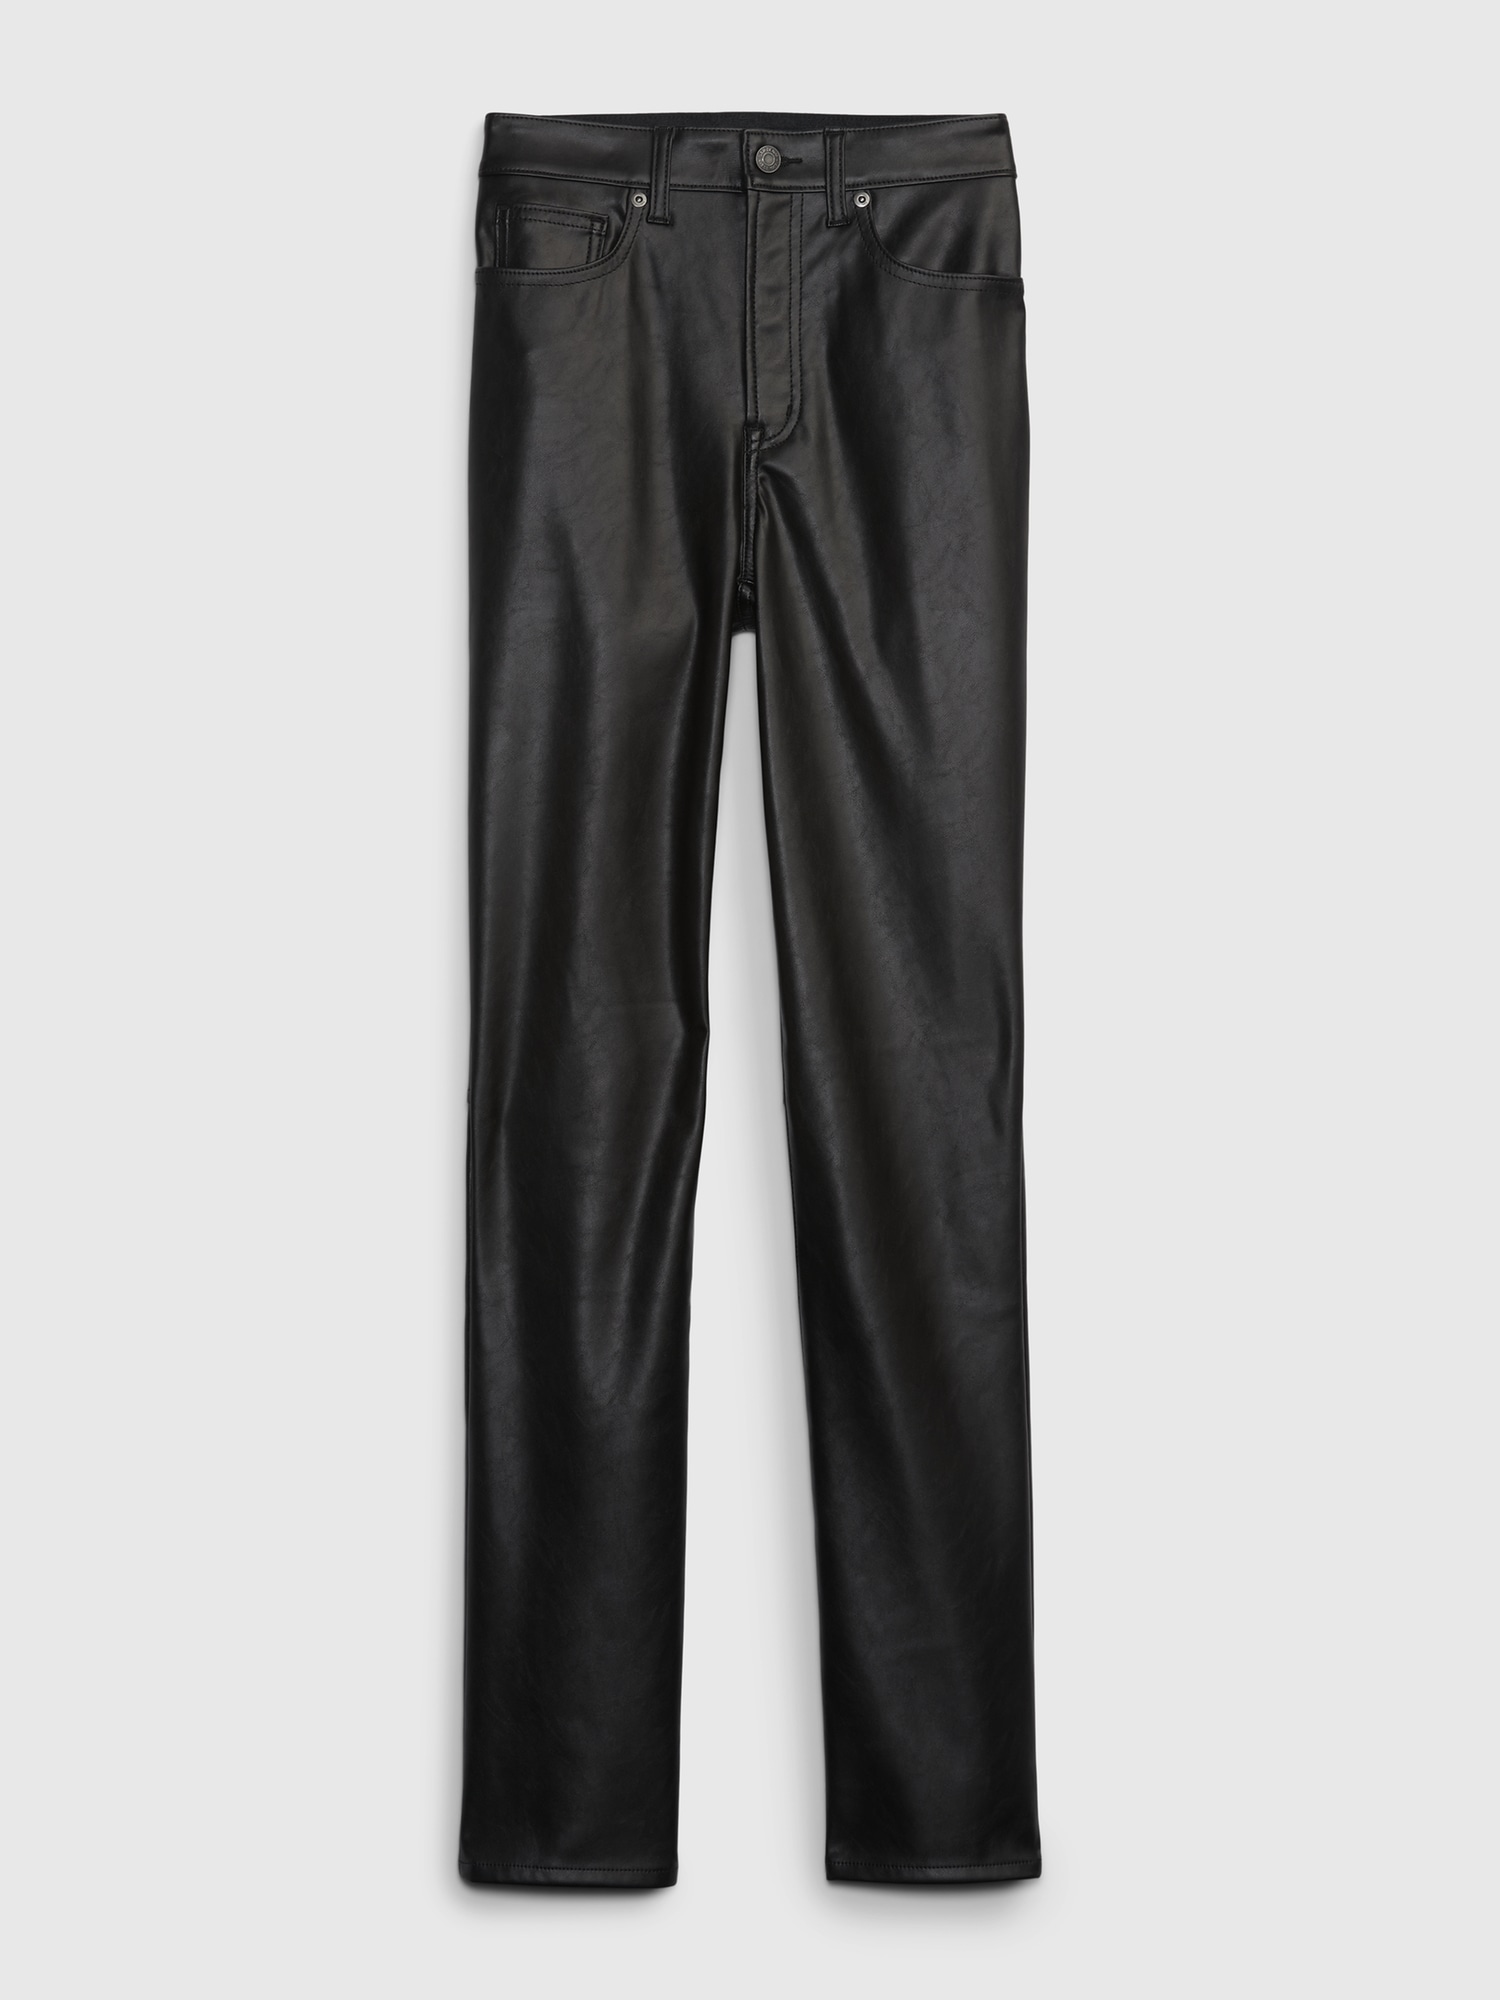 GAP, Pants & Jumpsuits, Gap Genuine Leather Pants